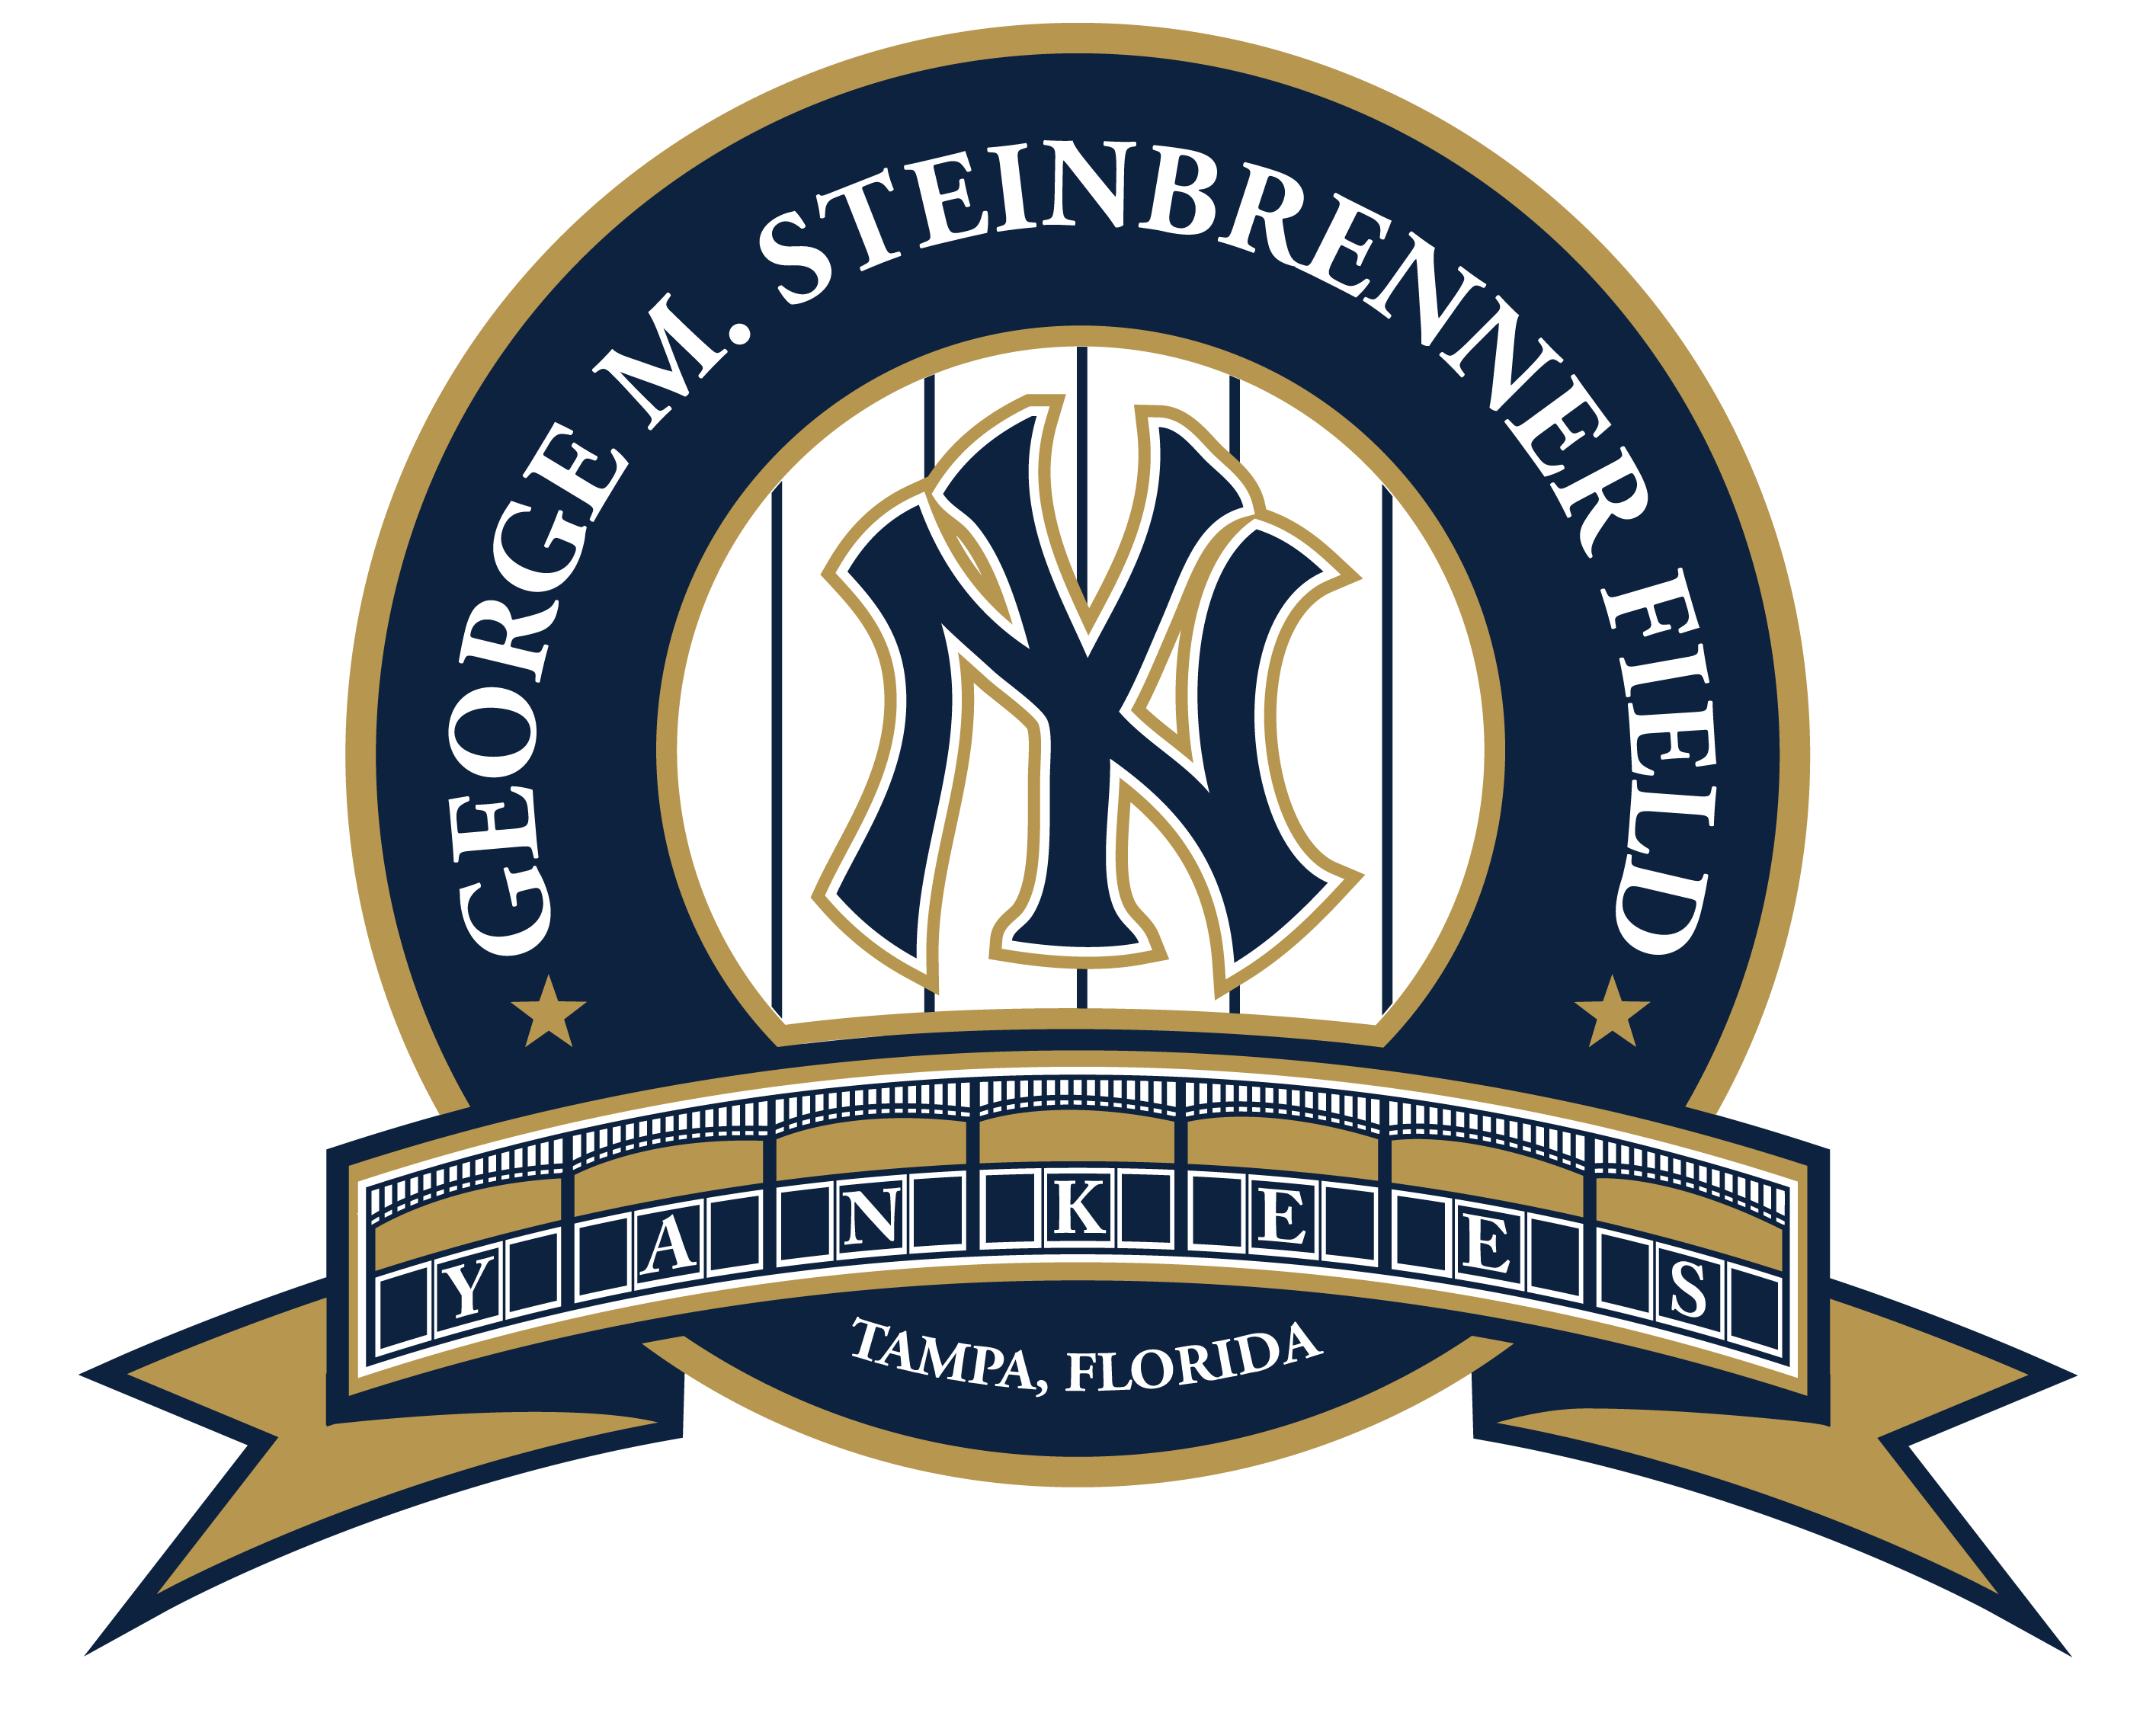 George Steinbrenner Field foundation logo